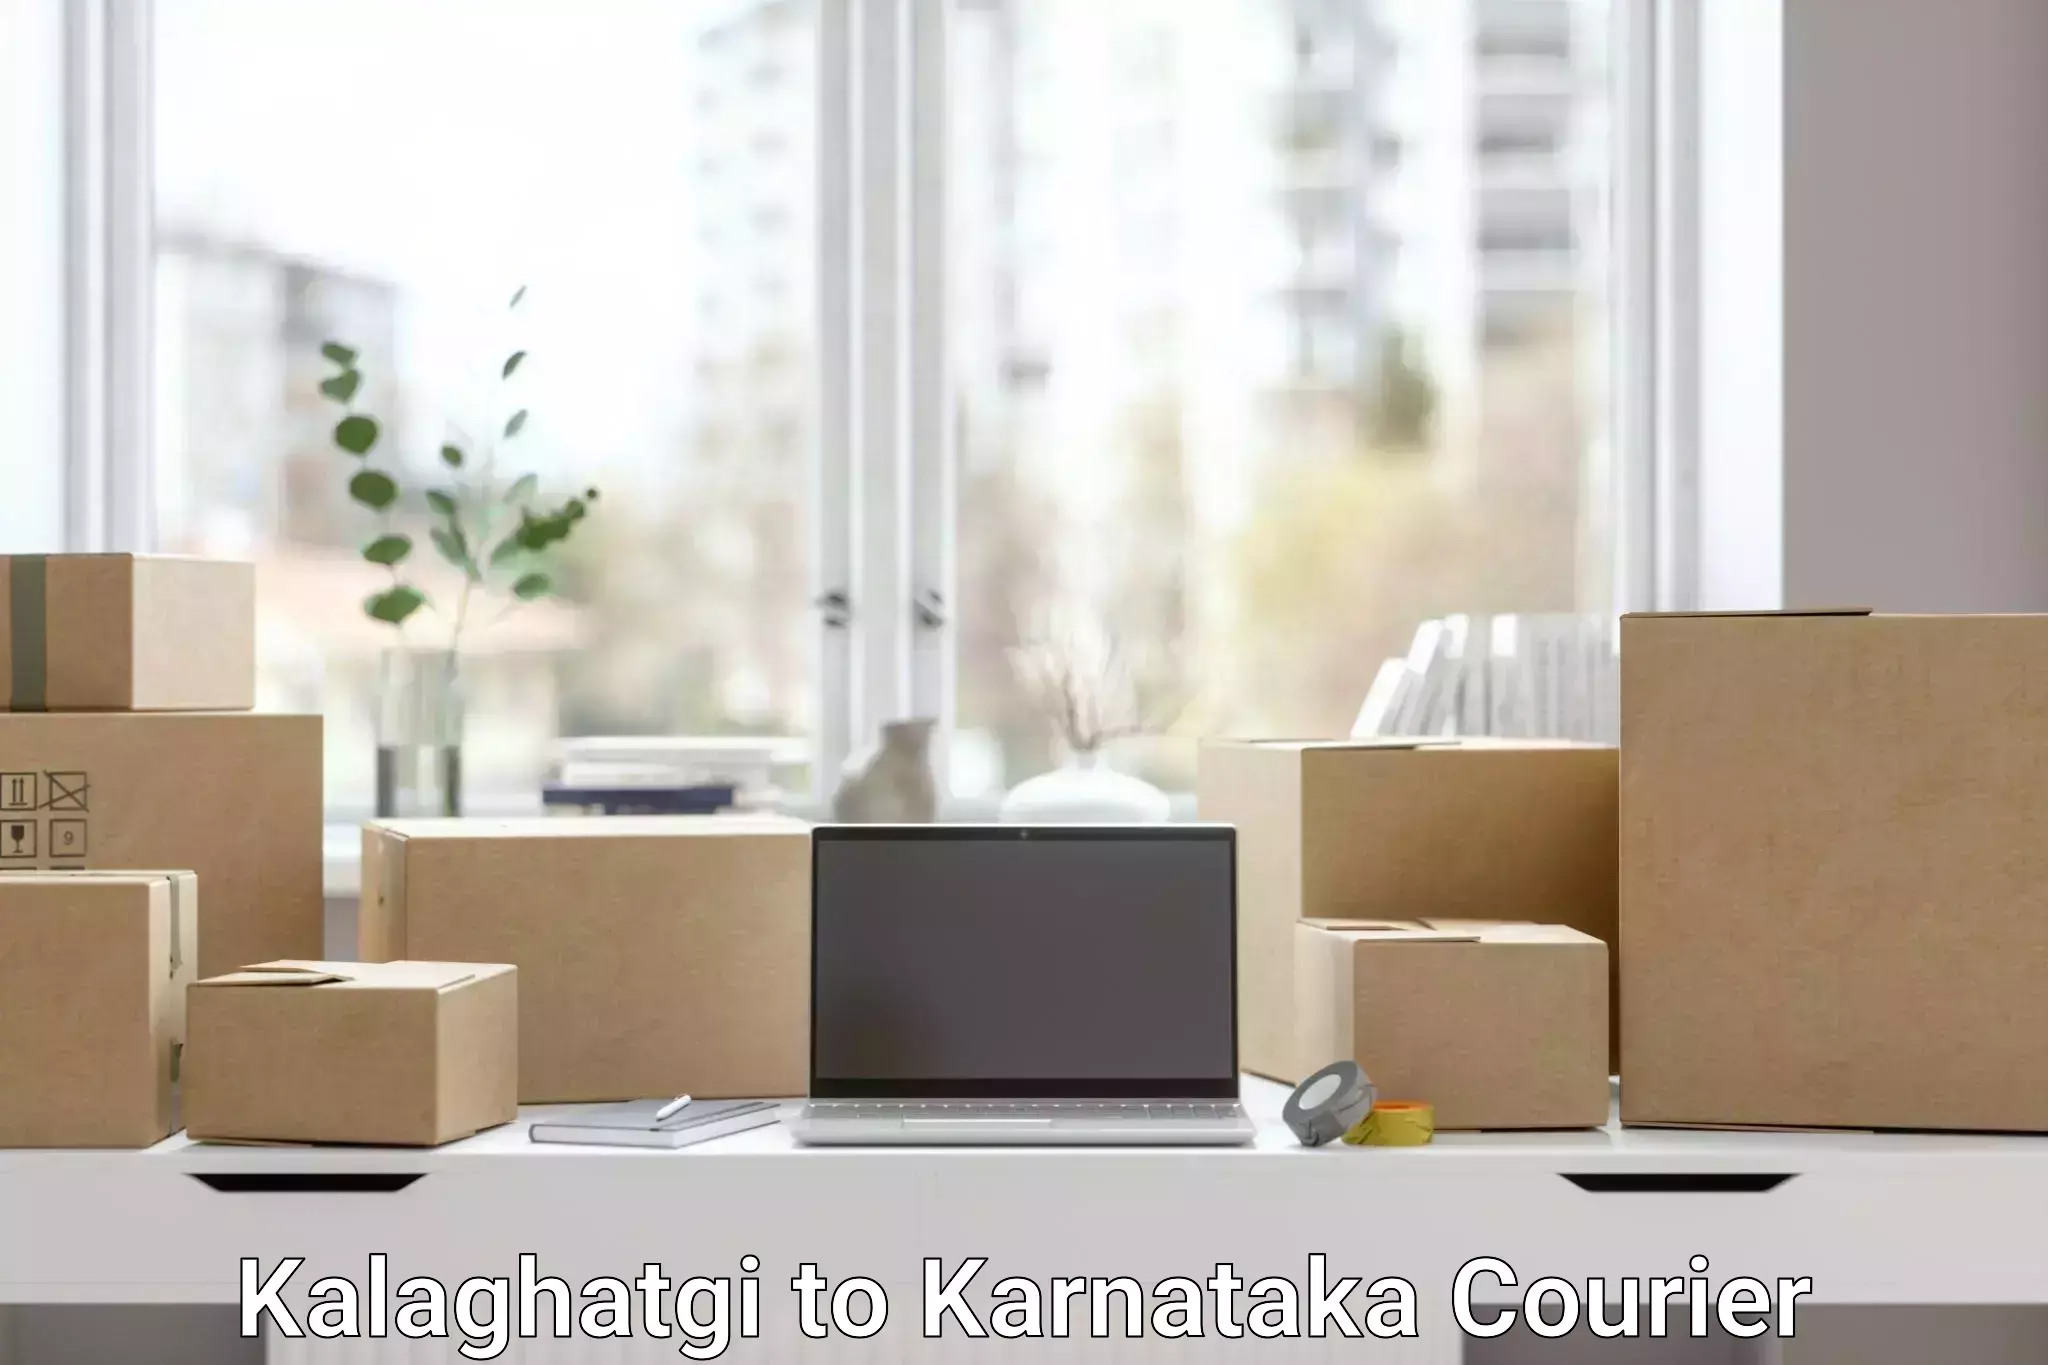 Comprehensive shipping network Kalaghatgi to Karnataka